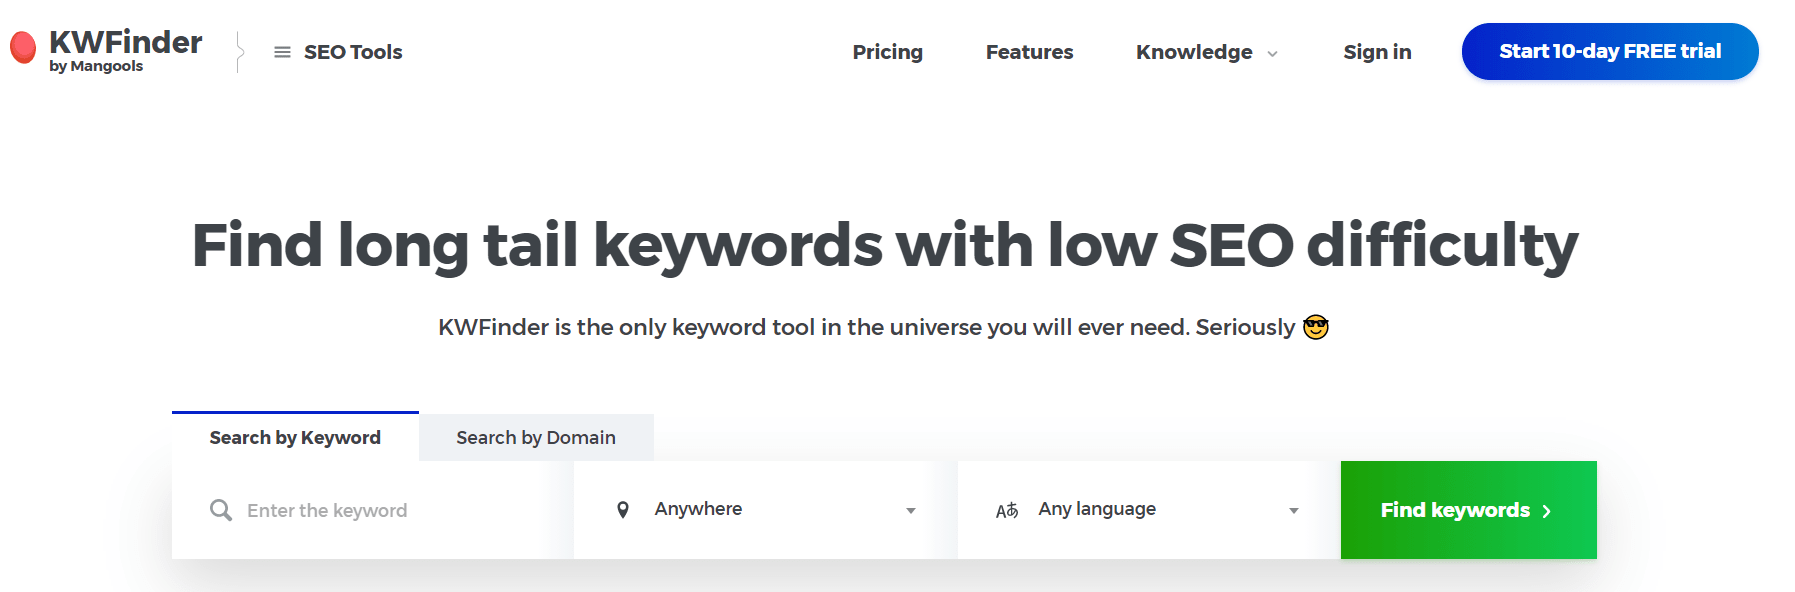 Keyword finder Overview